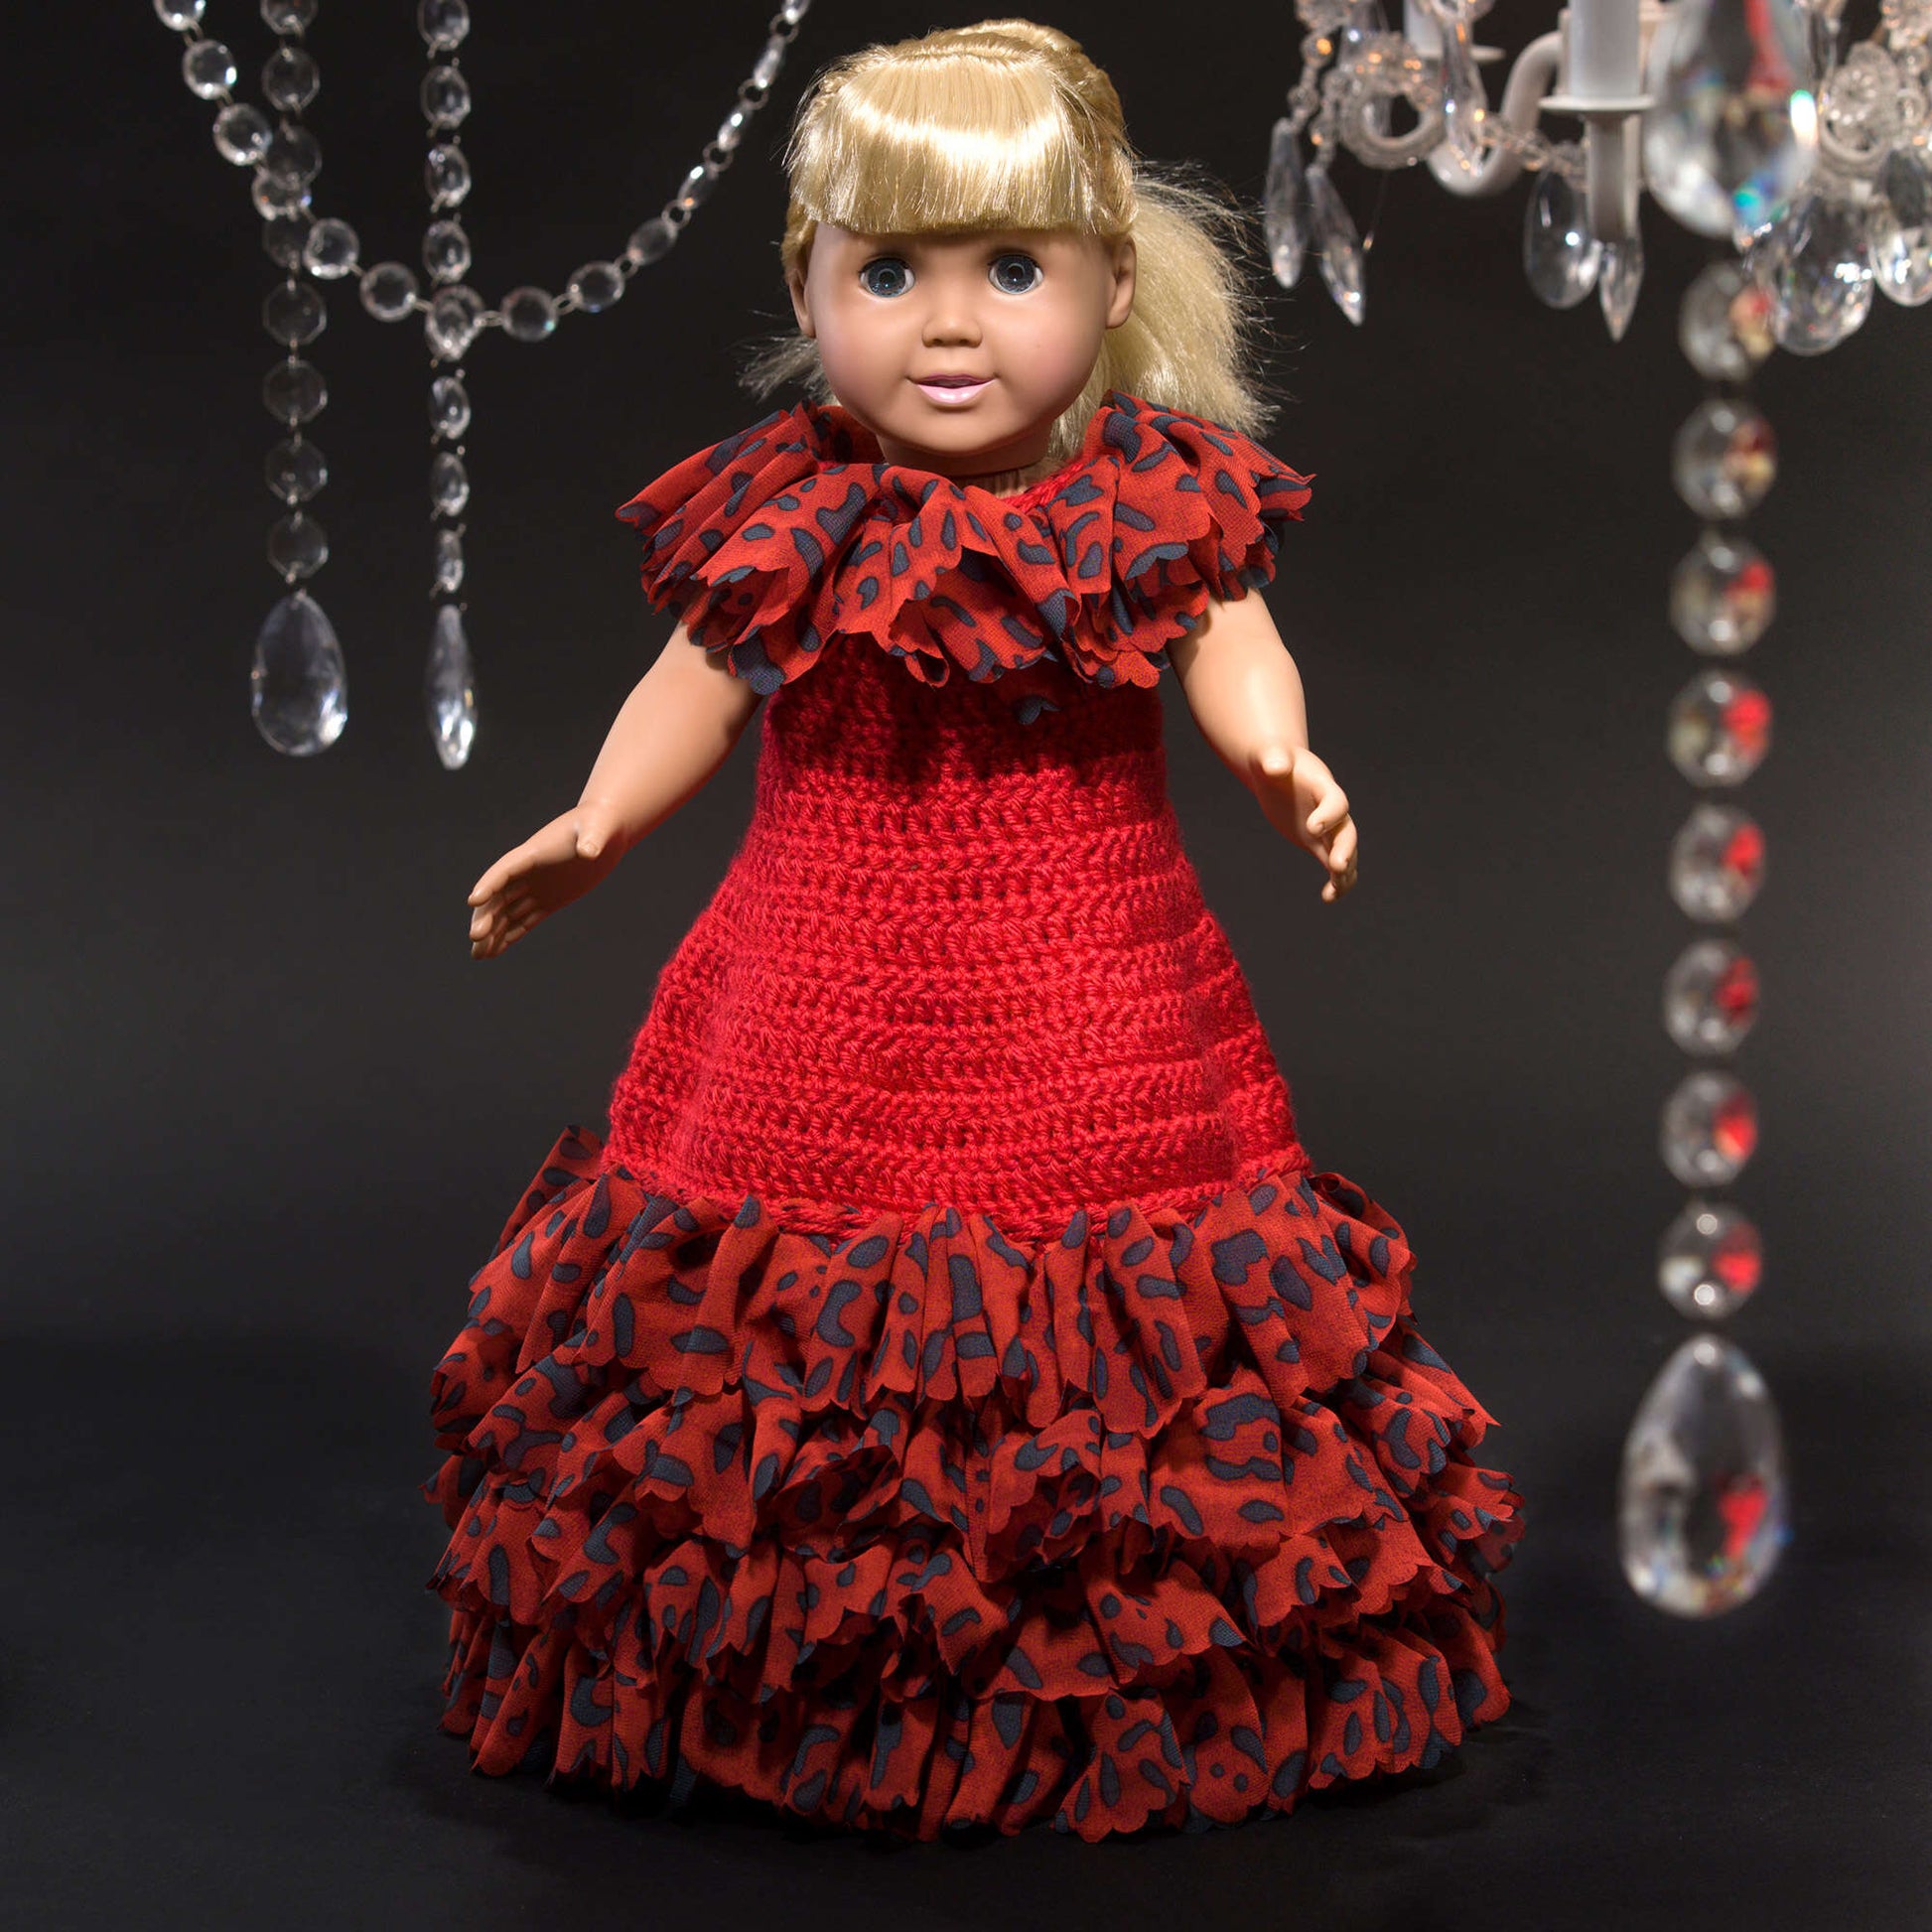 Free Red Heart Crochet Debutante Doll Dress Pattern